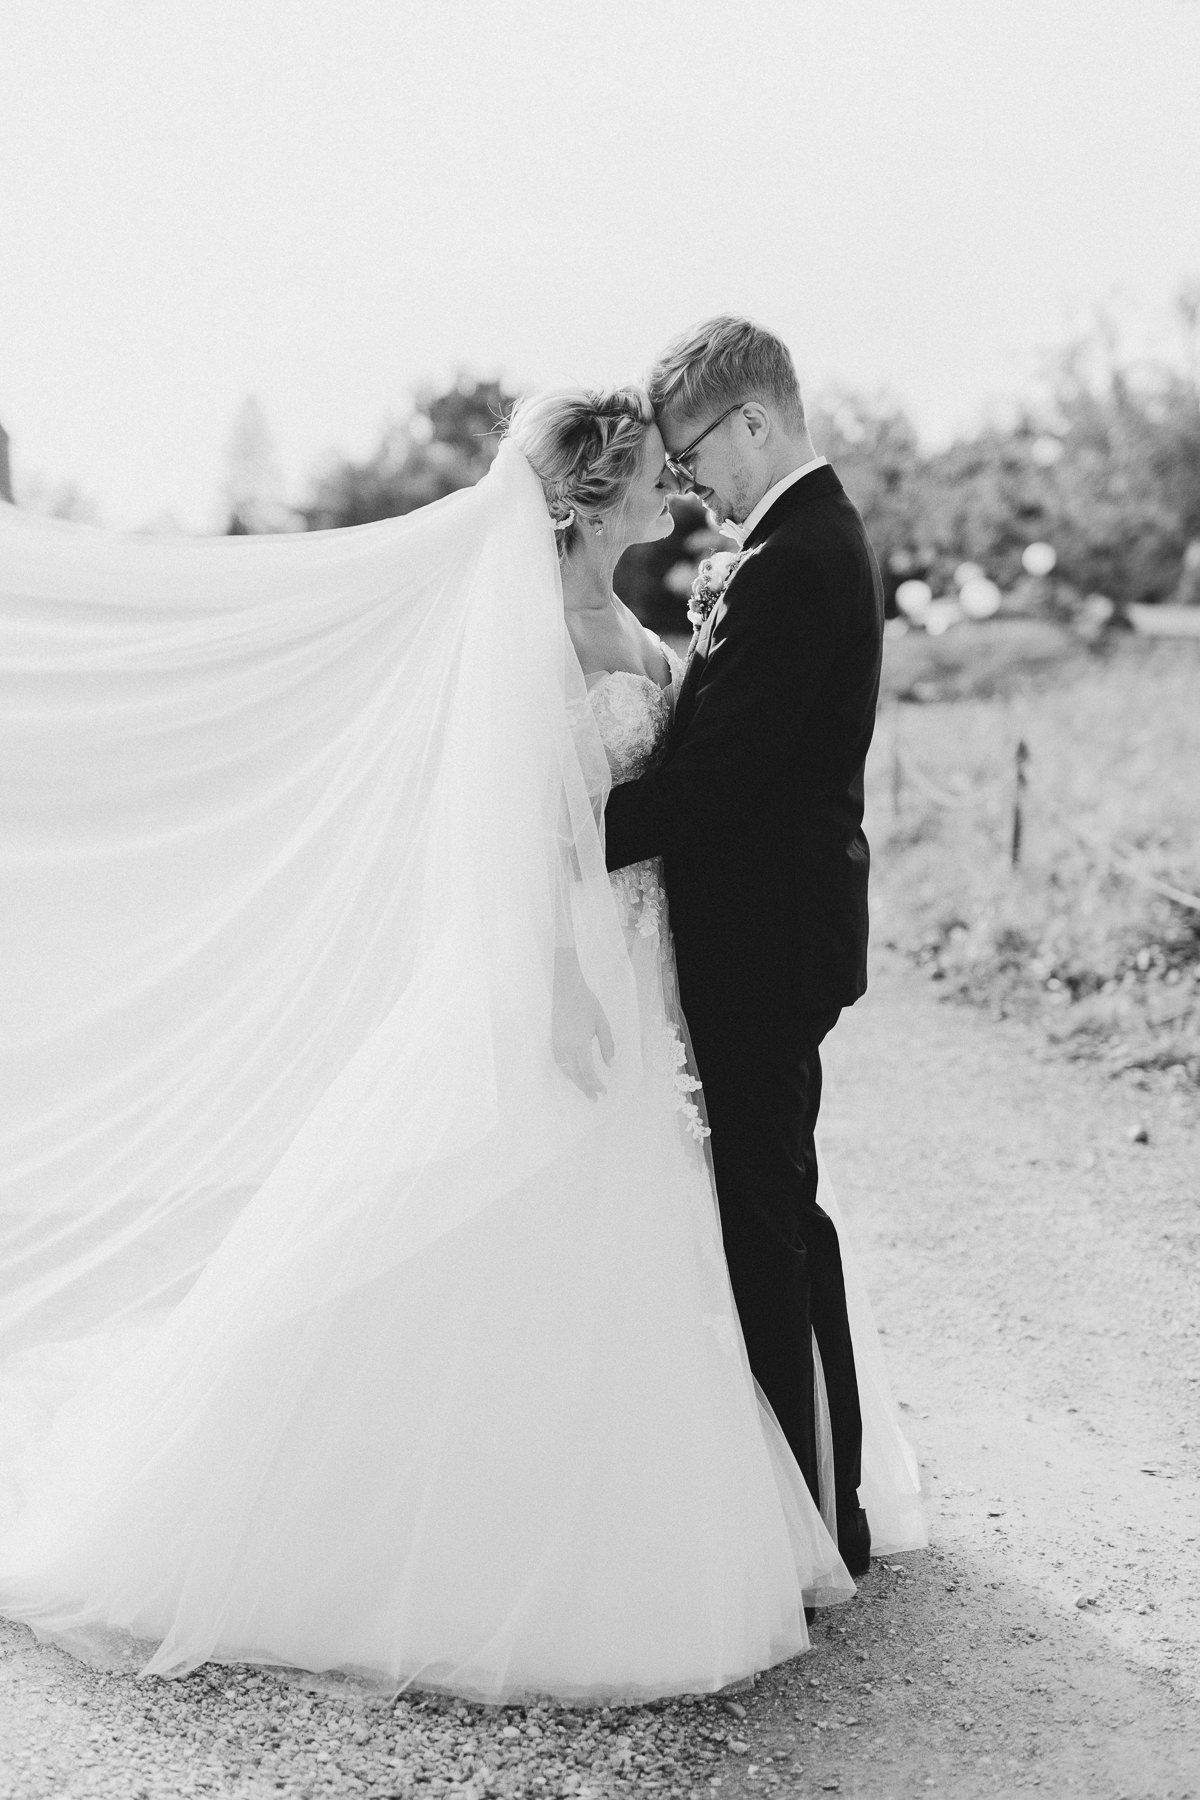 Schwarz-weiß-Aufnahme eines Brautpaares, das sich eng umschlungen gegenüber steht.